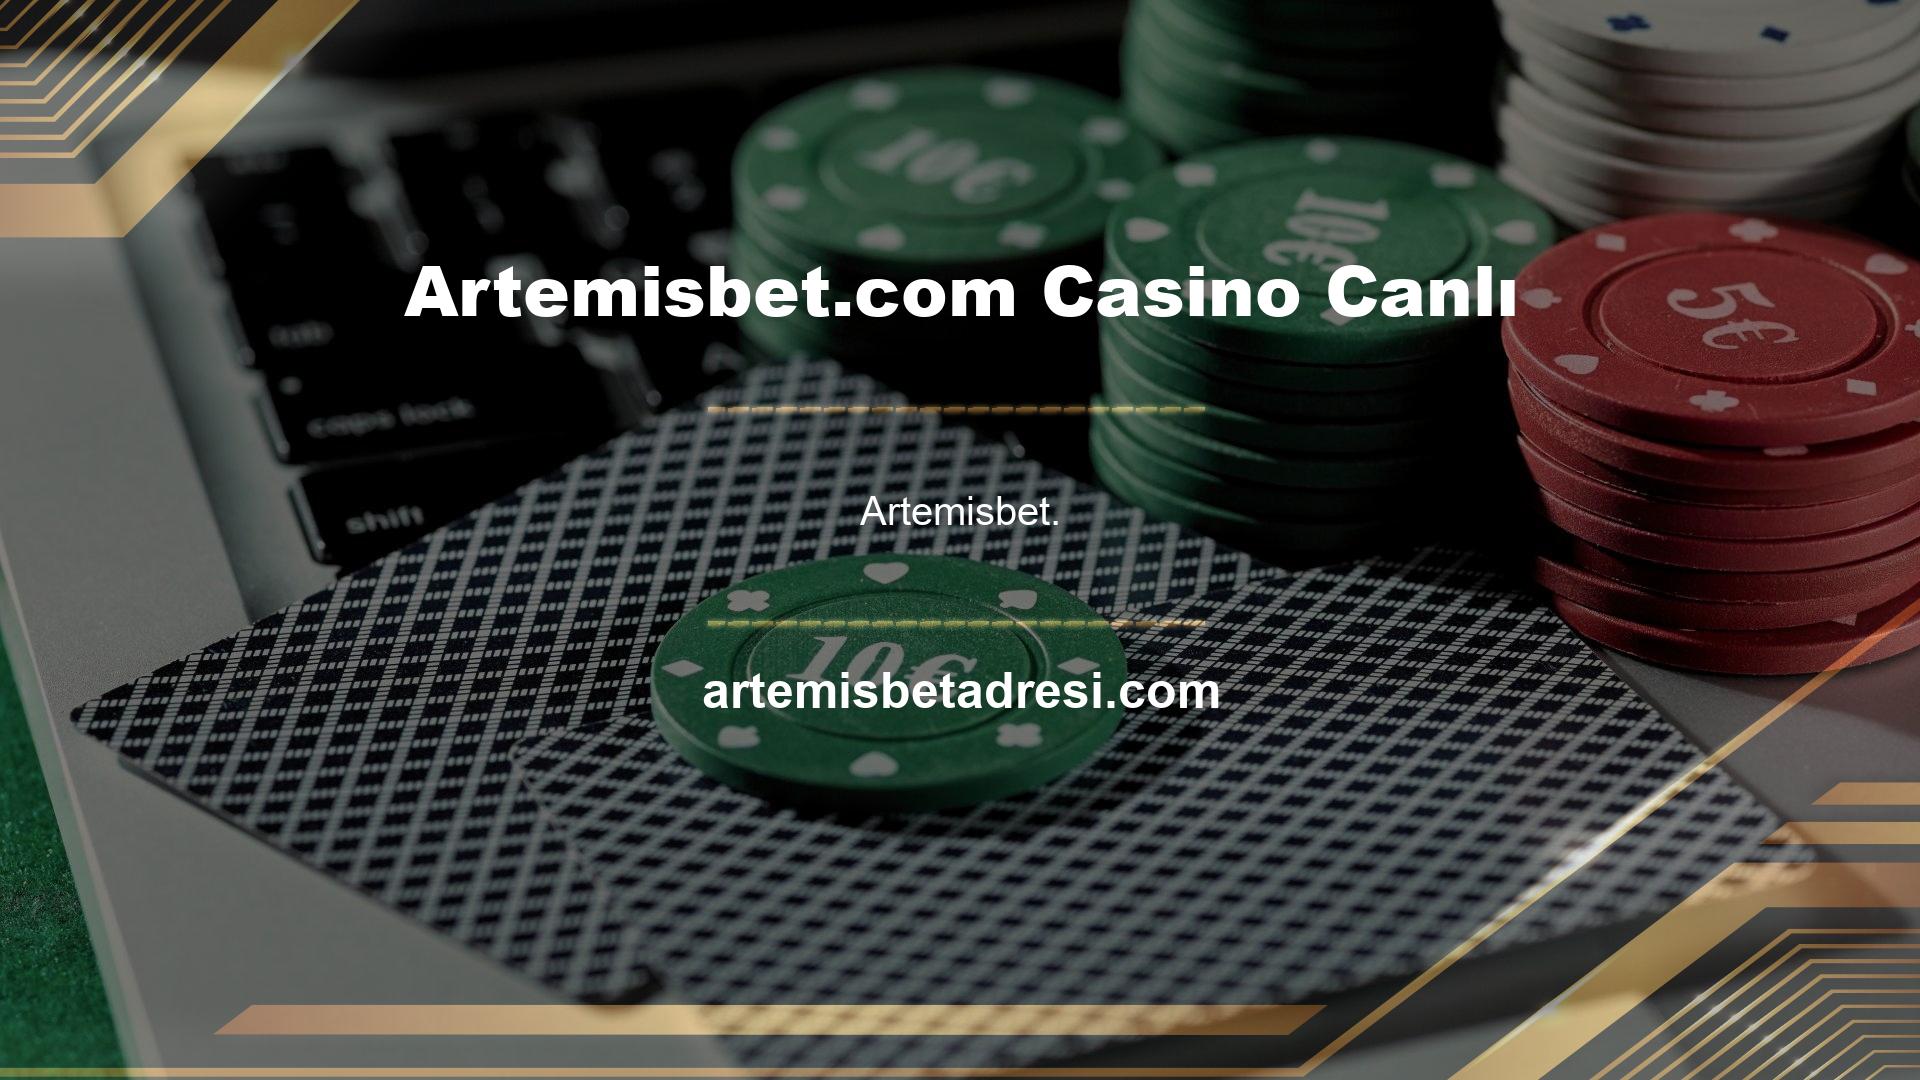 com Casino Canlı
Artemisbet